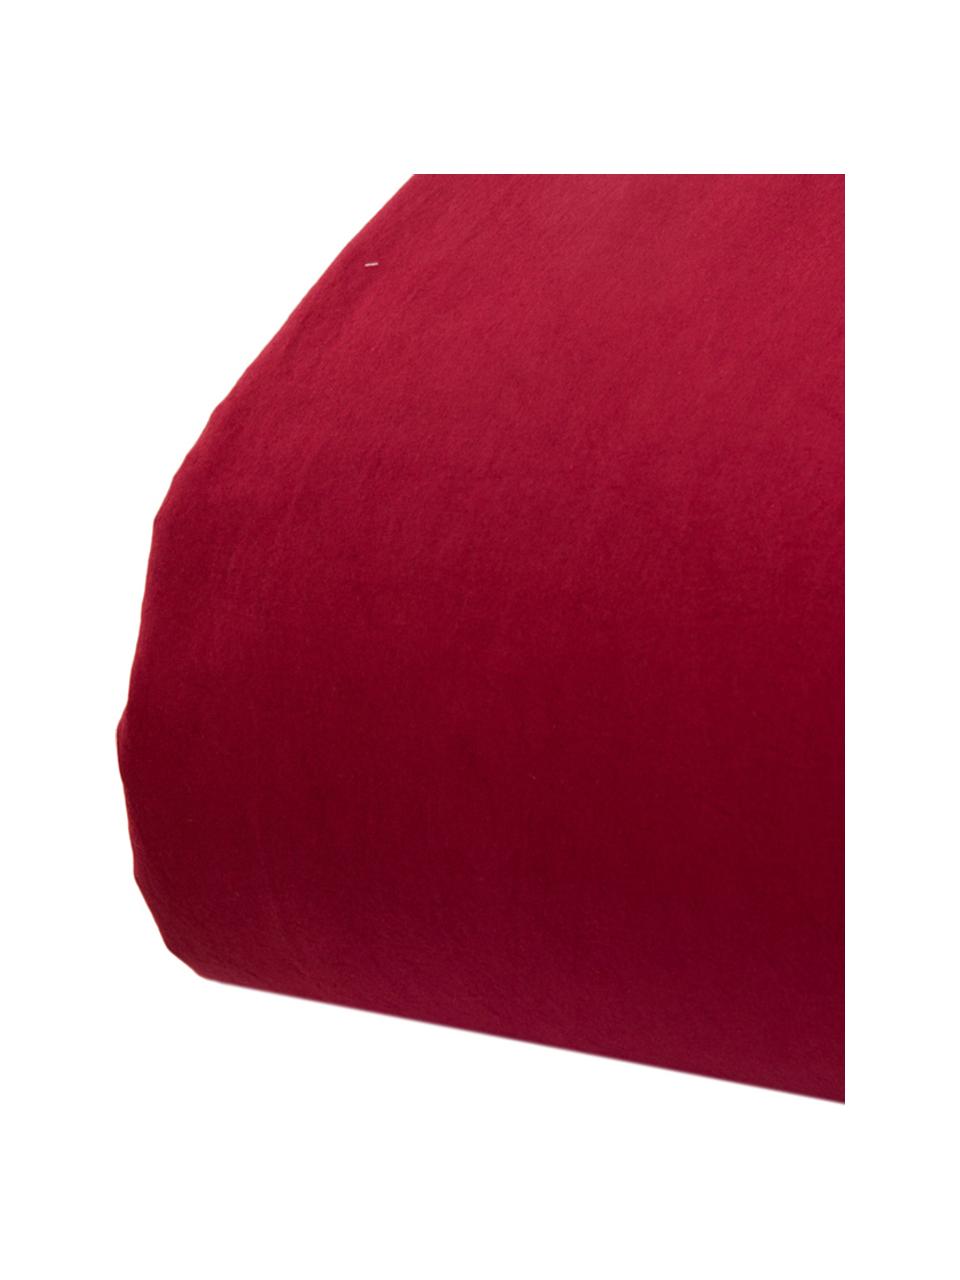 Parure copripiumino in cotone effetto stone washed Velle, Tessuto: cotone ranforce, Fronte e retro: rosso rubino, 155 x 200 cm + 1 federa 50 x 80 cm